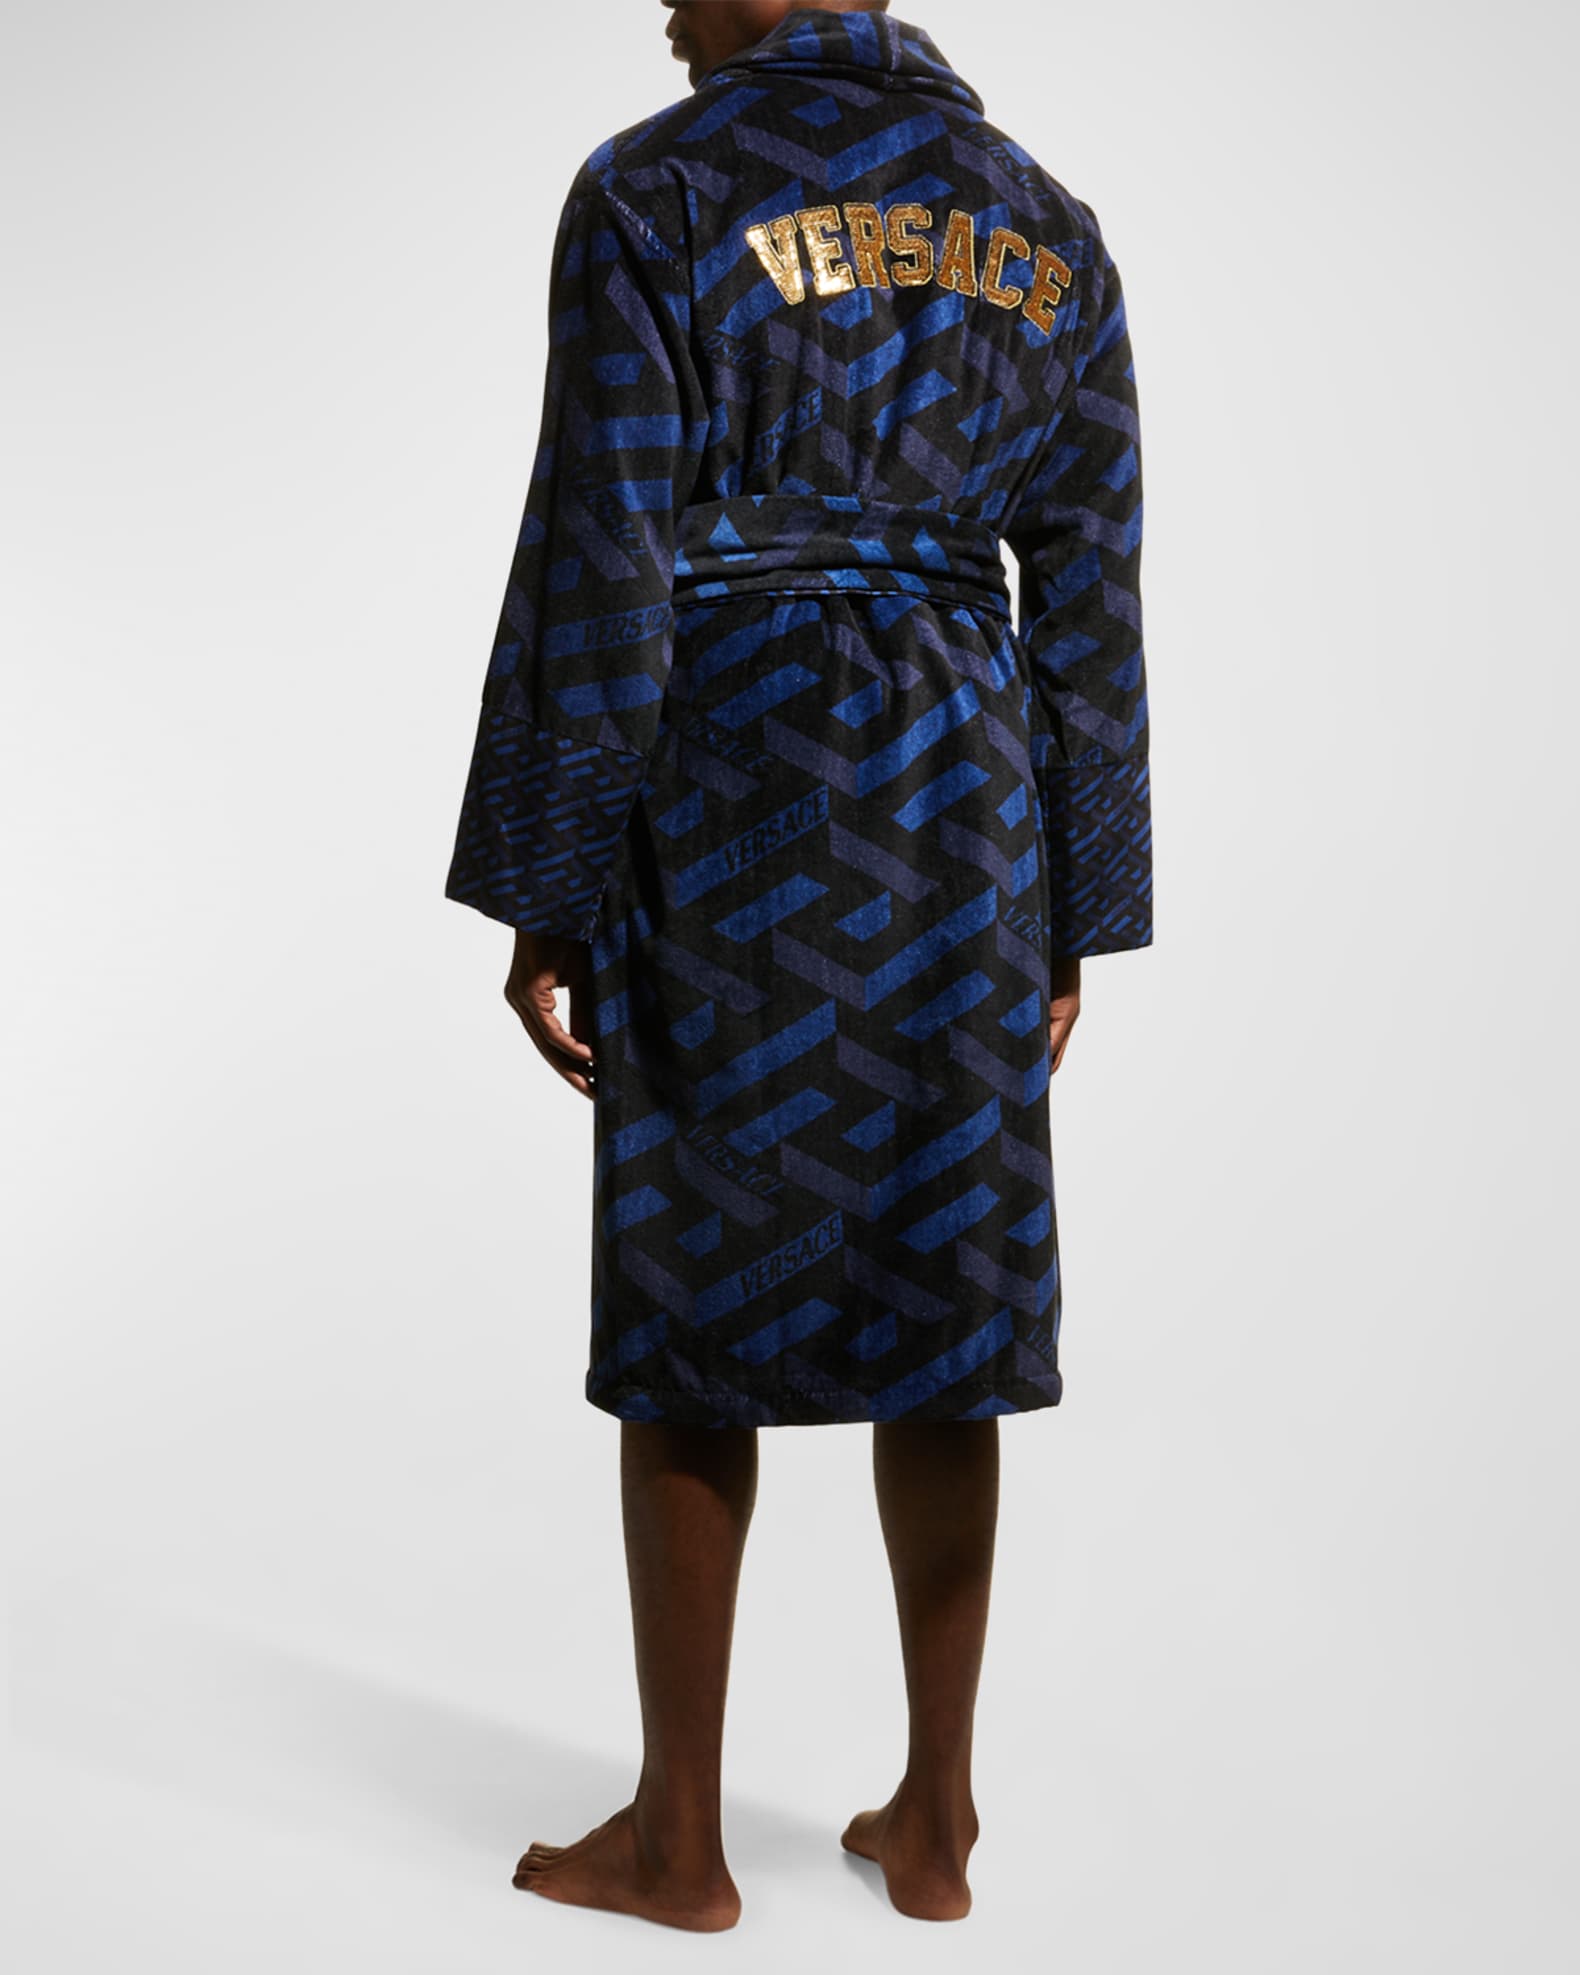 inhoudsopgave Eigenlijk Bergbeklimmer Versace Men's Greca Cotton Robe | Neiman Marcus